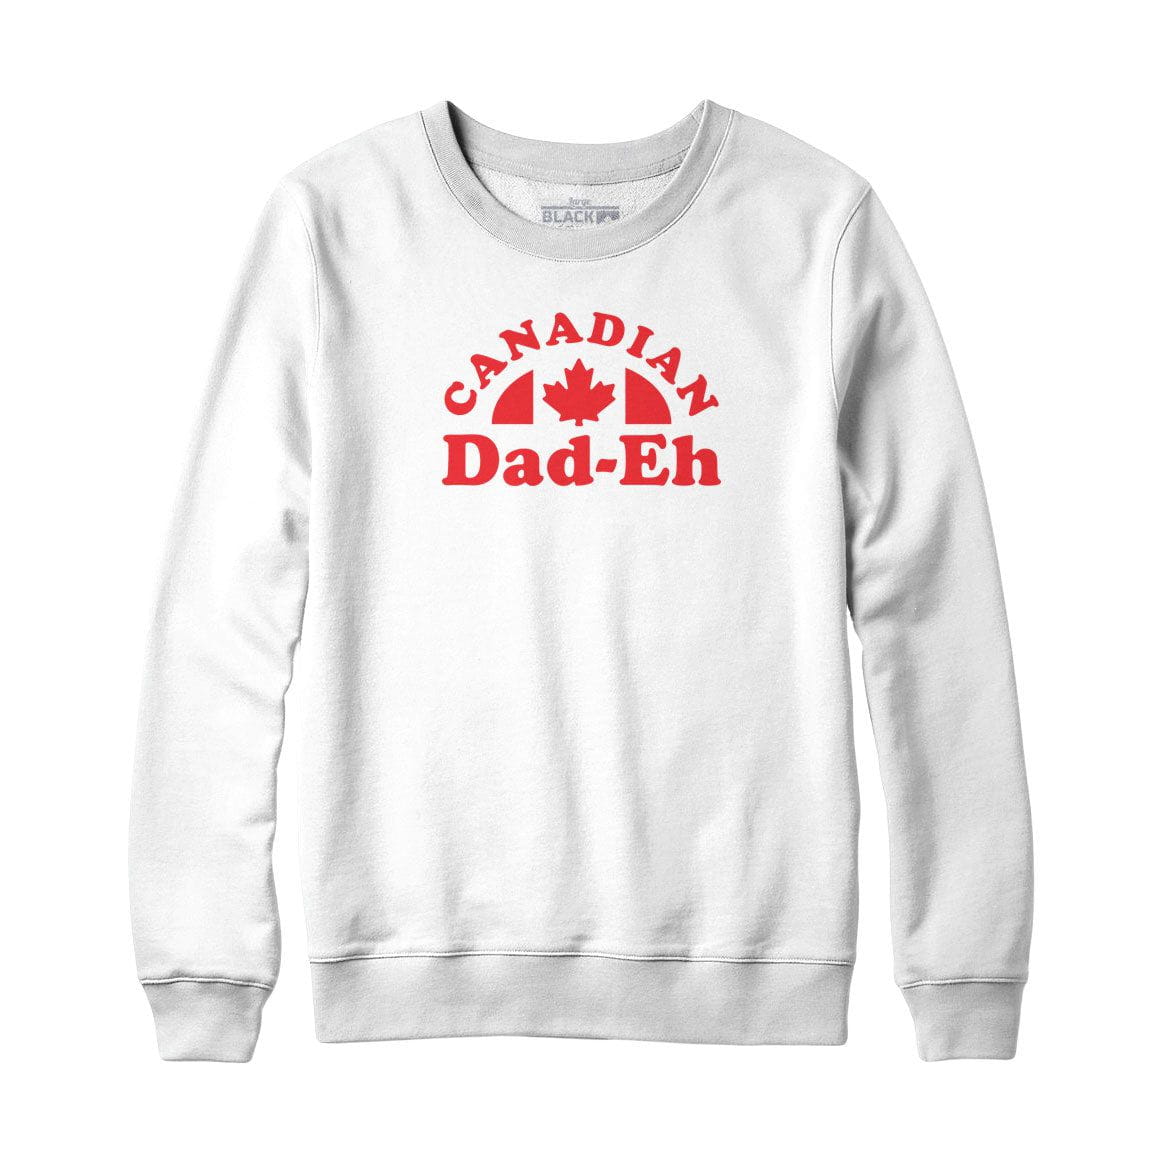 Canadian Dad-eh Sweatshirt or Hoodie